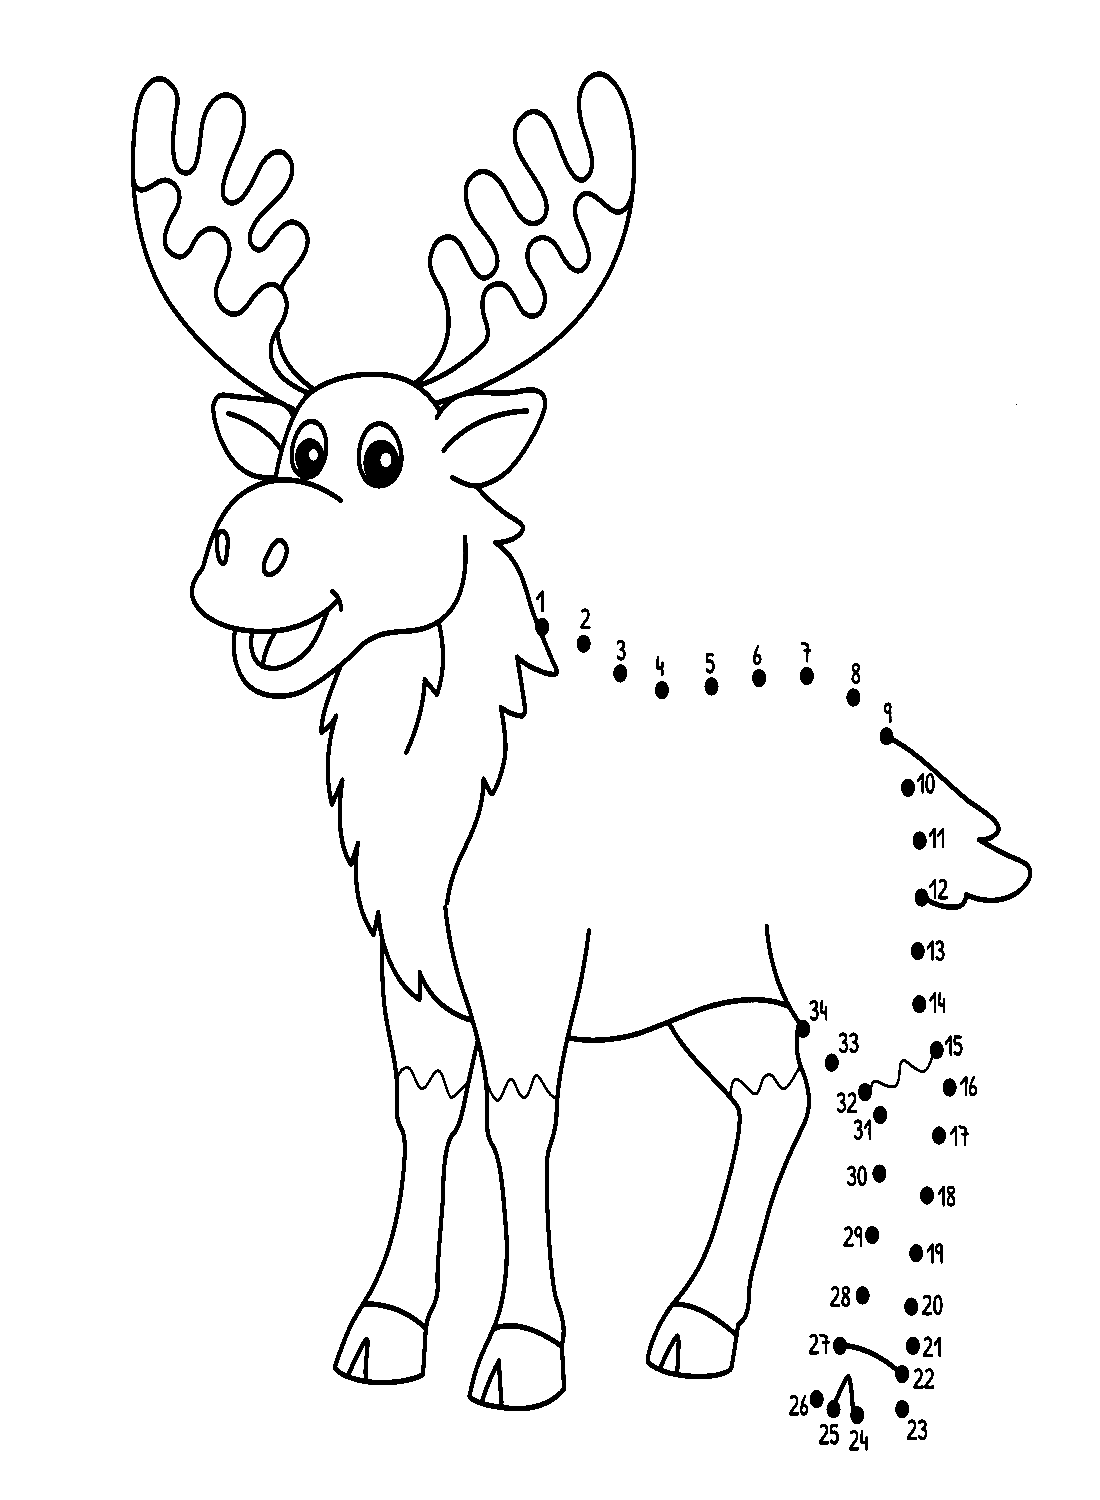 Punto per punto Elk da Elk